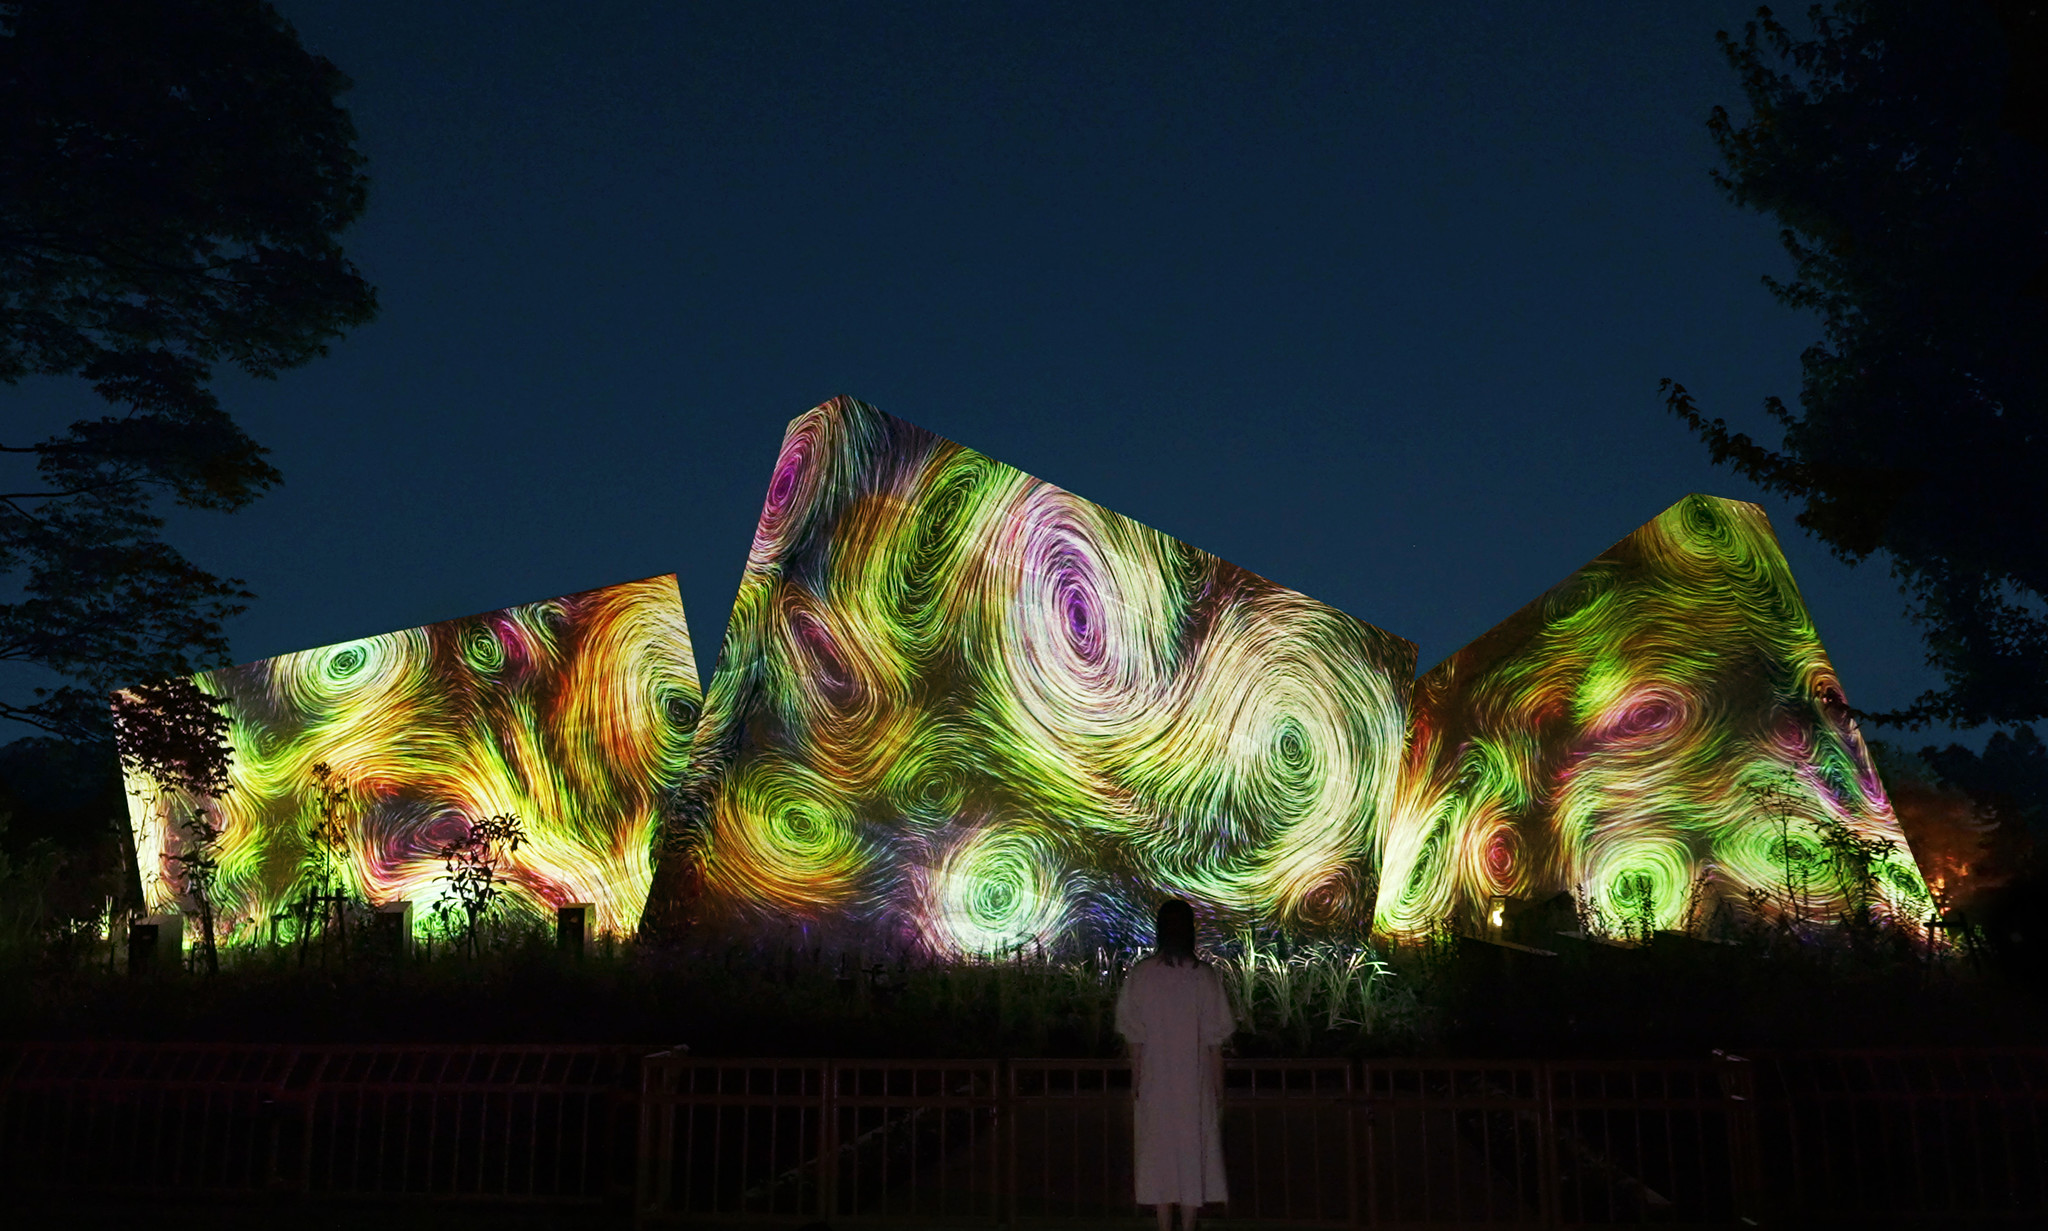 「チームラボ ボタニカルガーデン 大阪」明日7月29日オープン。夜の長居植物園を光のアート空間に変える常設展。期間限定・ひまわり畑の作品も同日